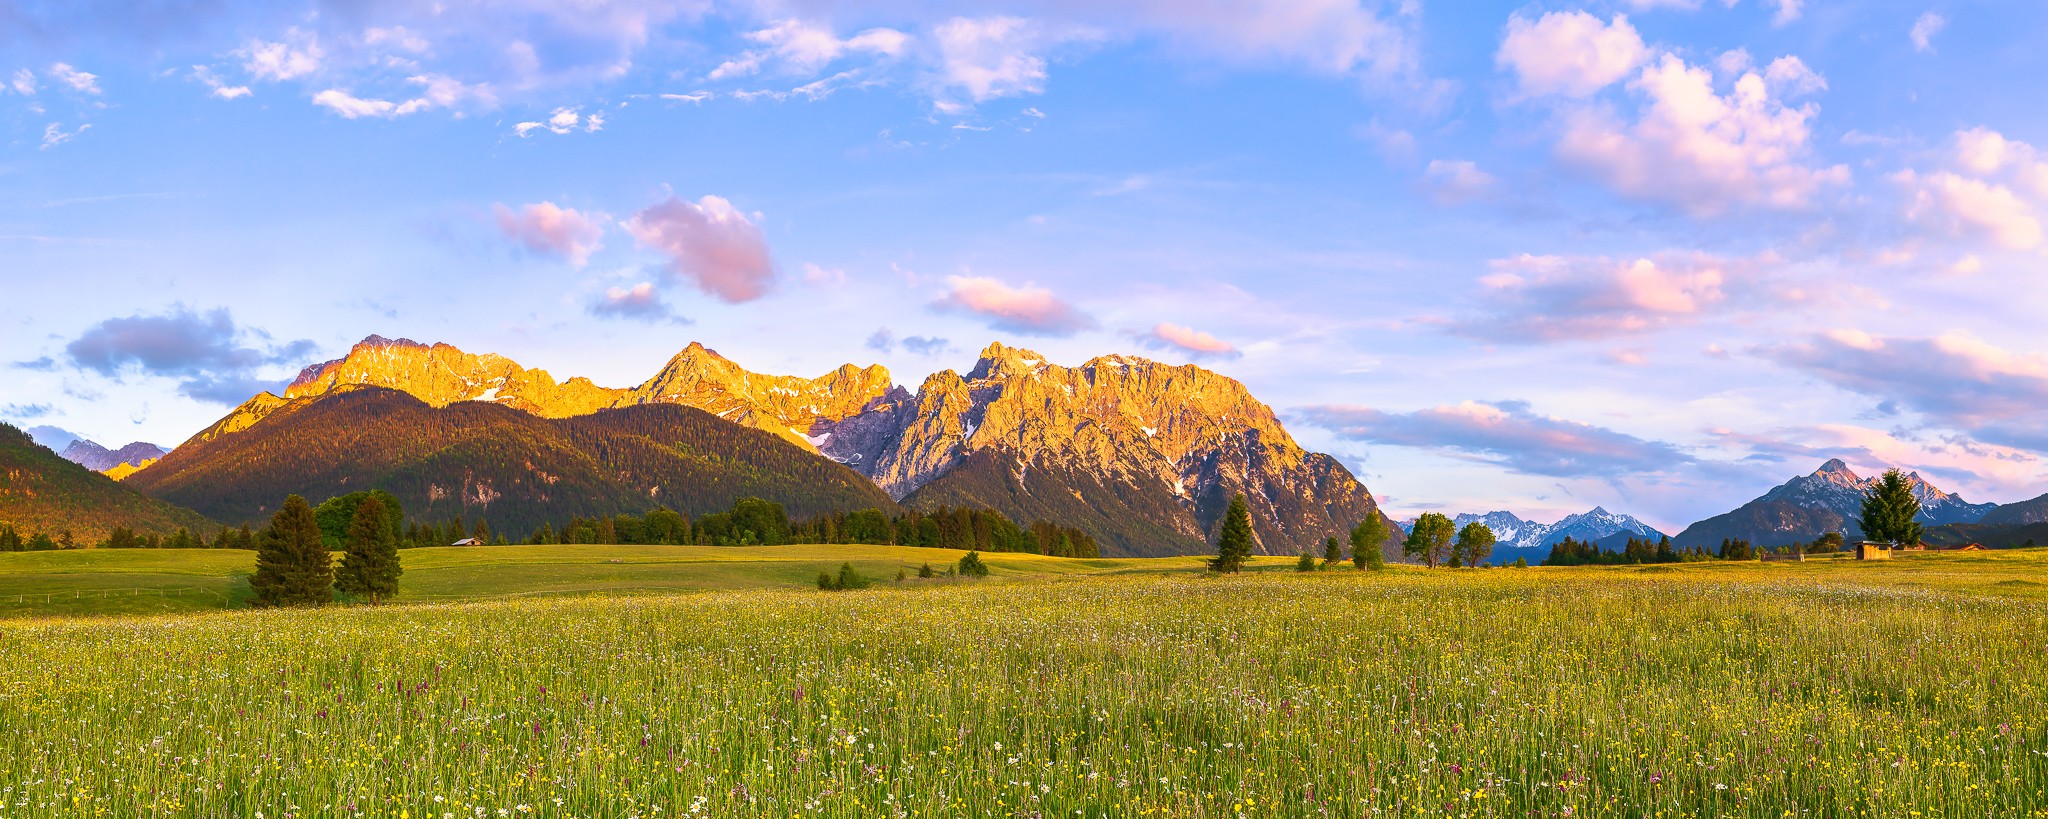 Wanderparadies in der Alpenwelt Karwendel zwischen Mittenwald und Klais. Neben den Wegen blühen Margeriten, Klappertopf, Klee, Hahnenfuß,